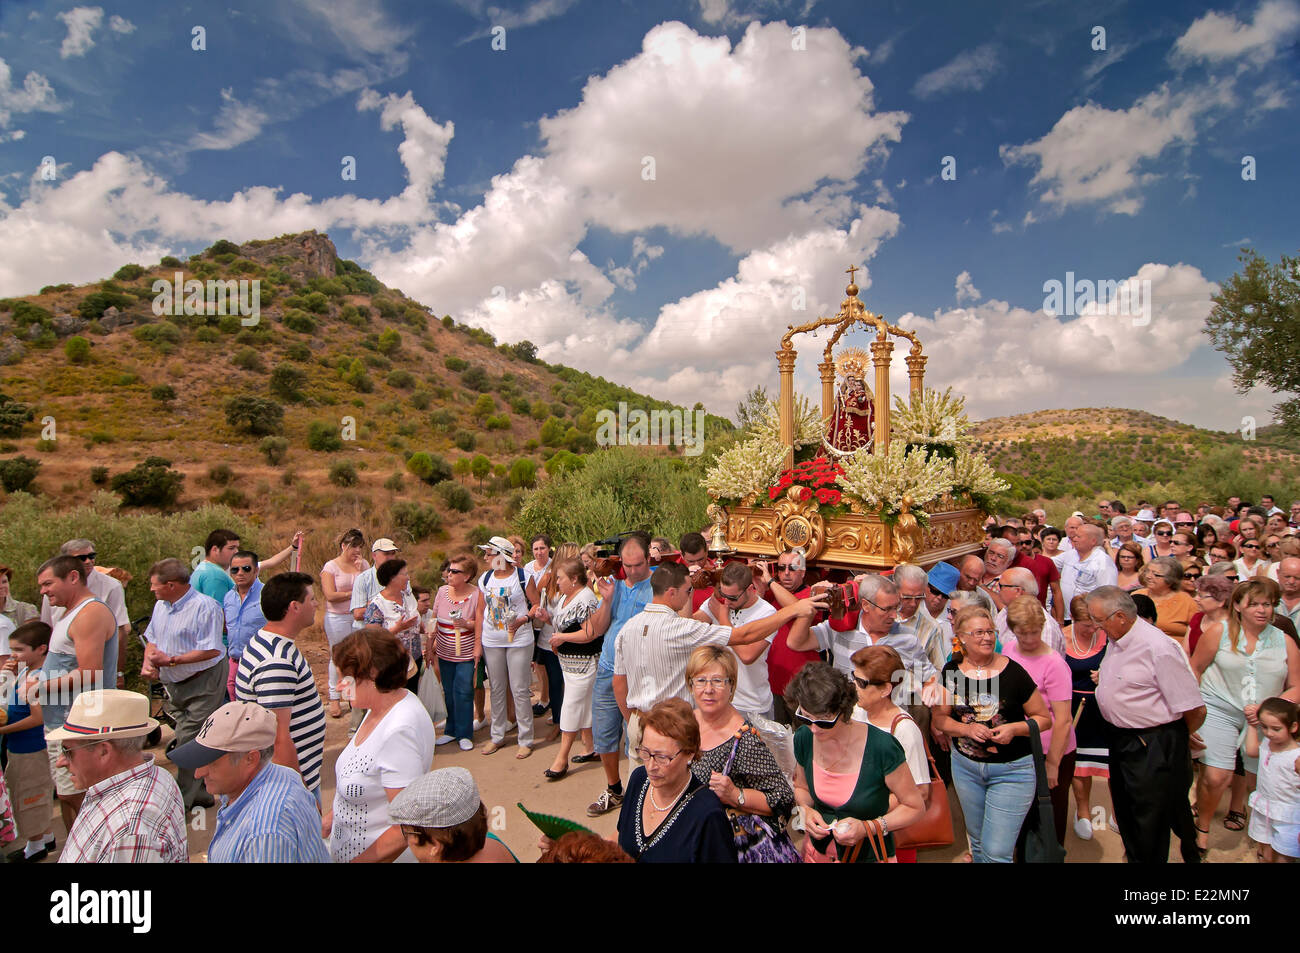 Pélerinage Virgen de la Fuensanta, la route touristique des bandits, corcoya, Séville province, région d'Andalousie, Espagne, Europe Banque D'Images